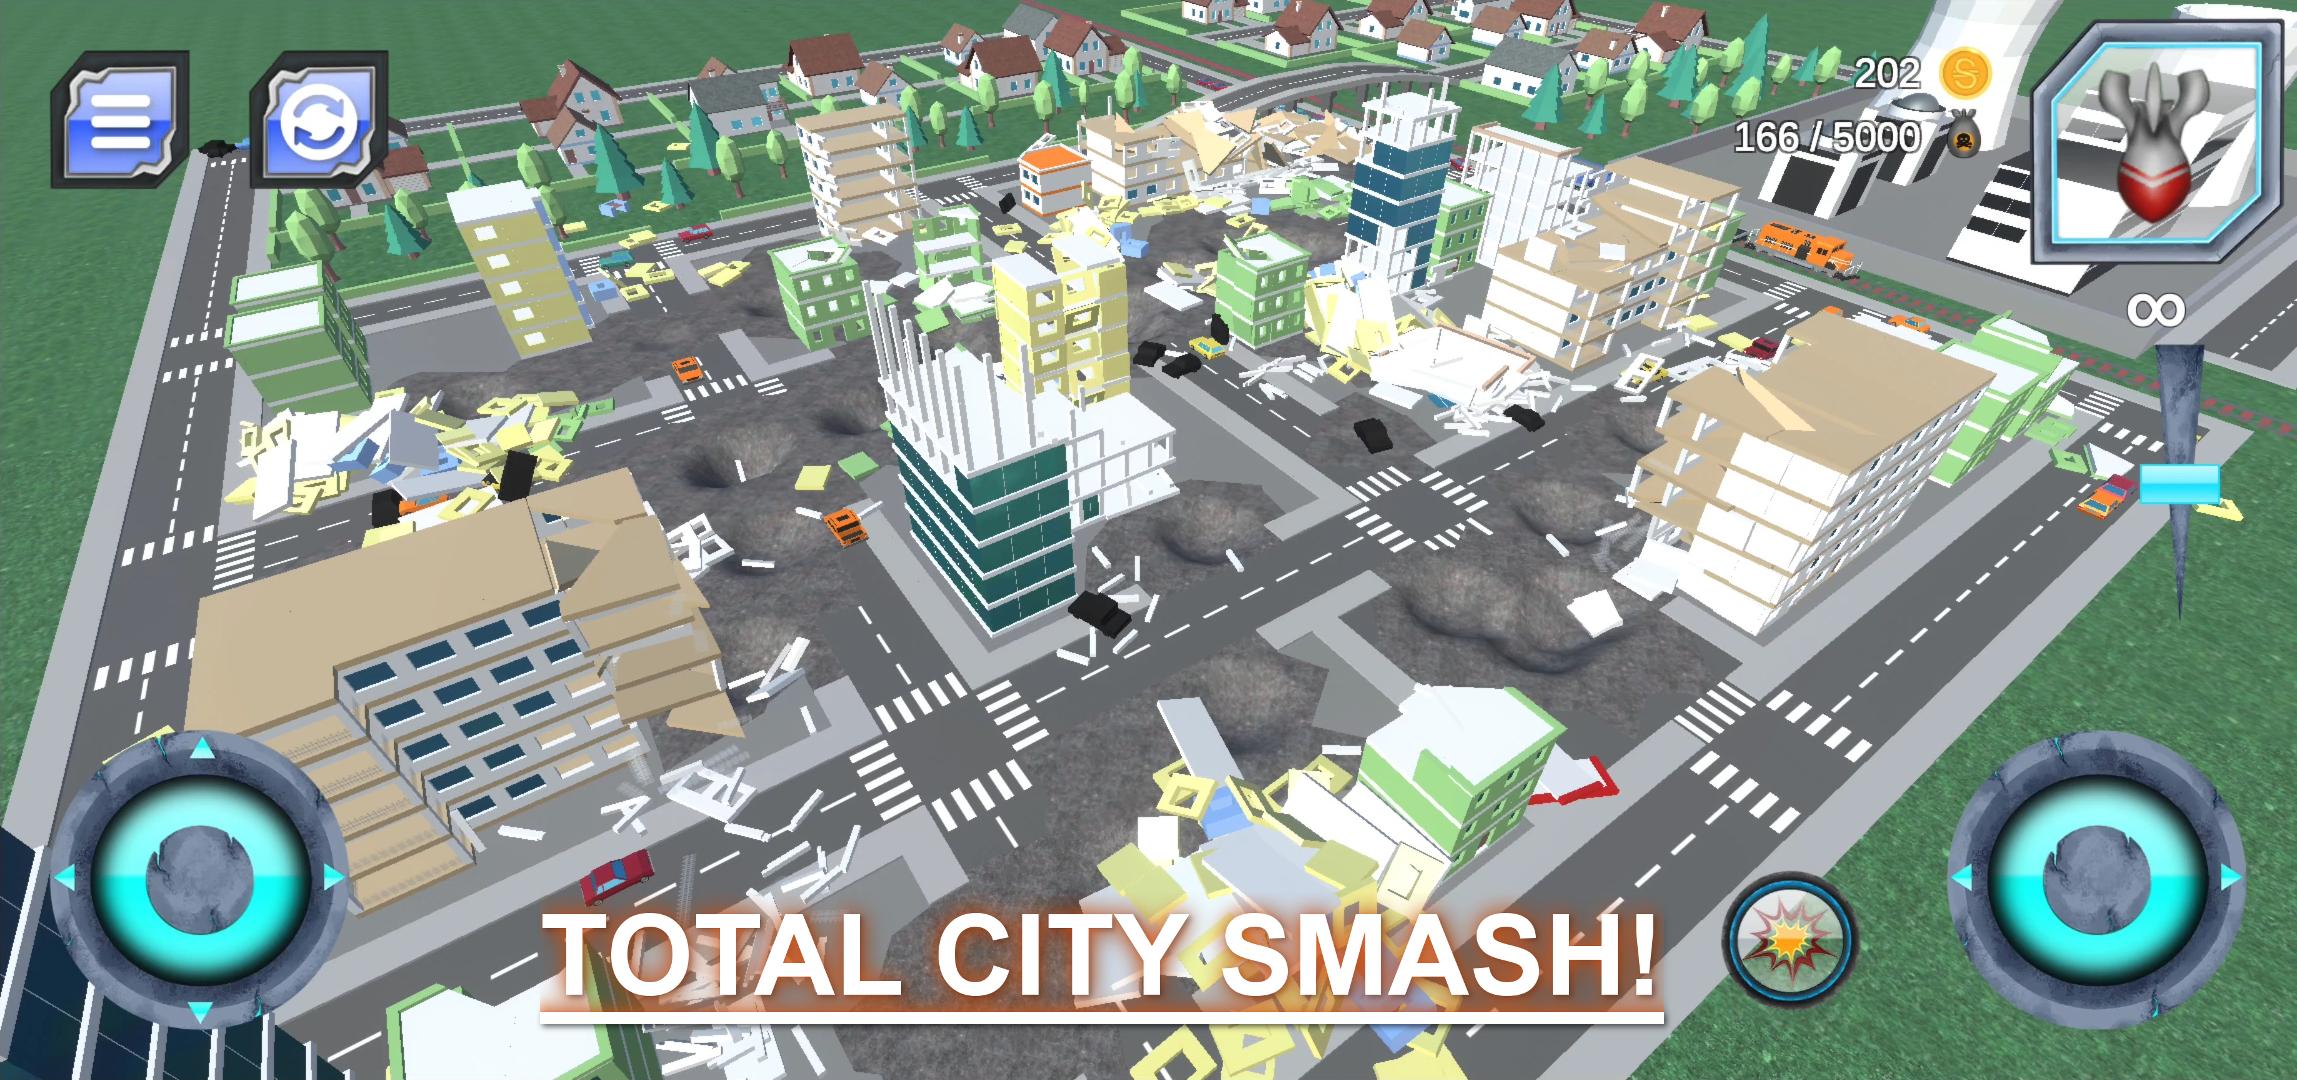 Игра city smash. Total City Smash. Игра с реалистичной физикой разрушения. City Smash взрывать город. Игры на физику разрушения.